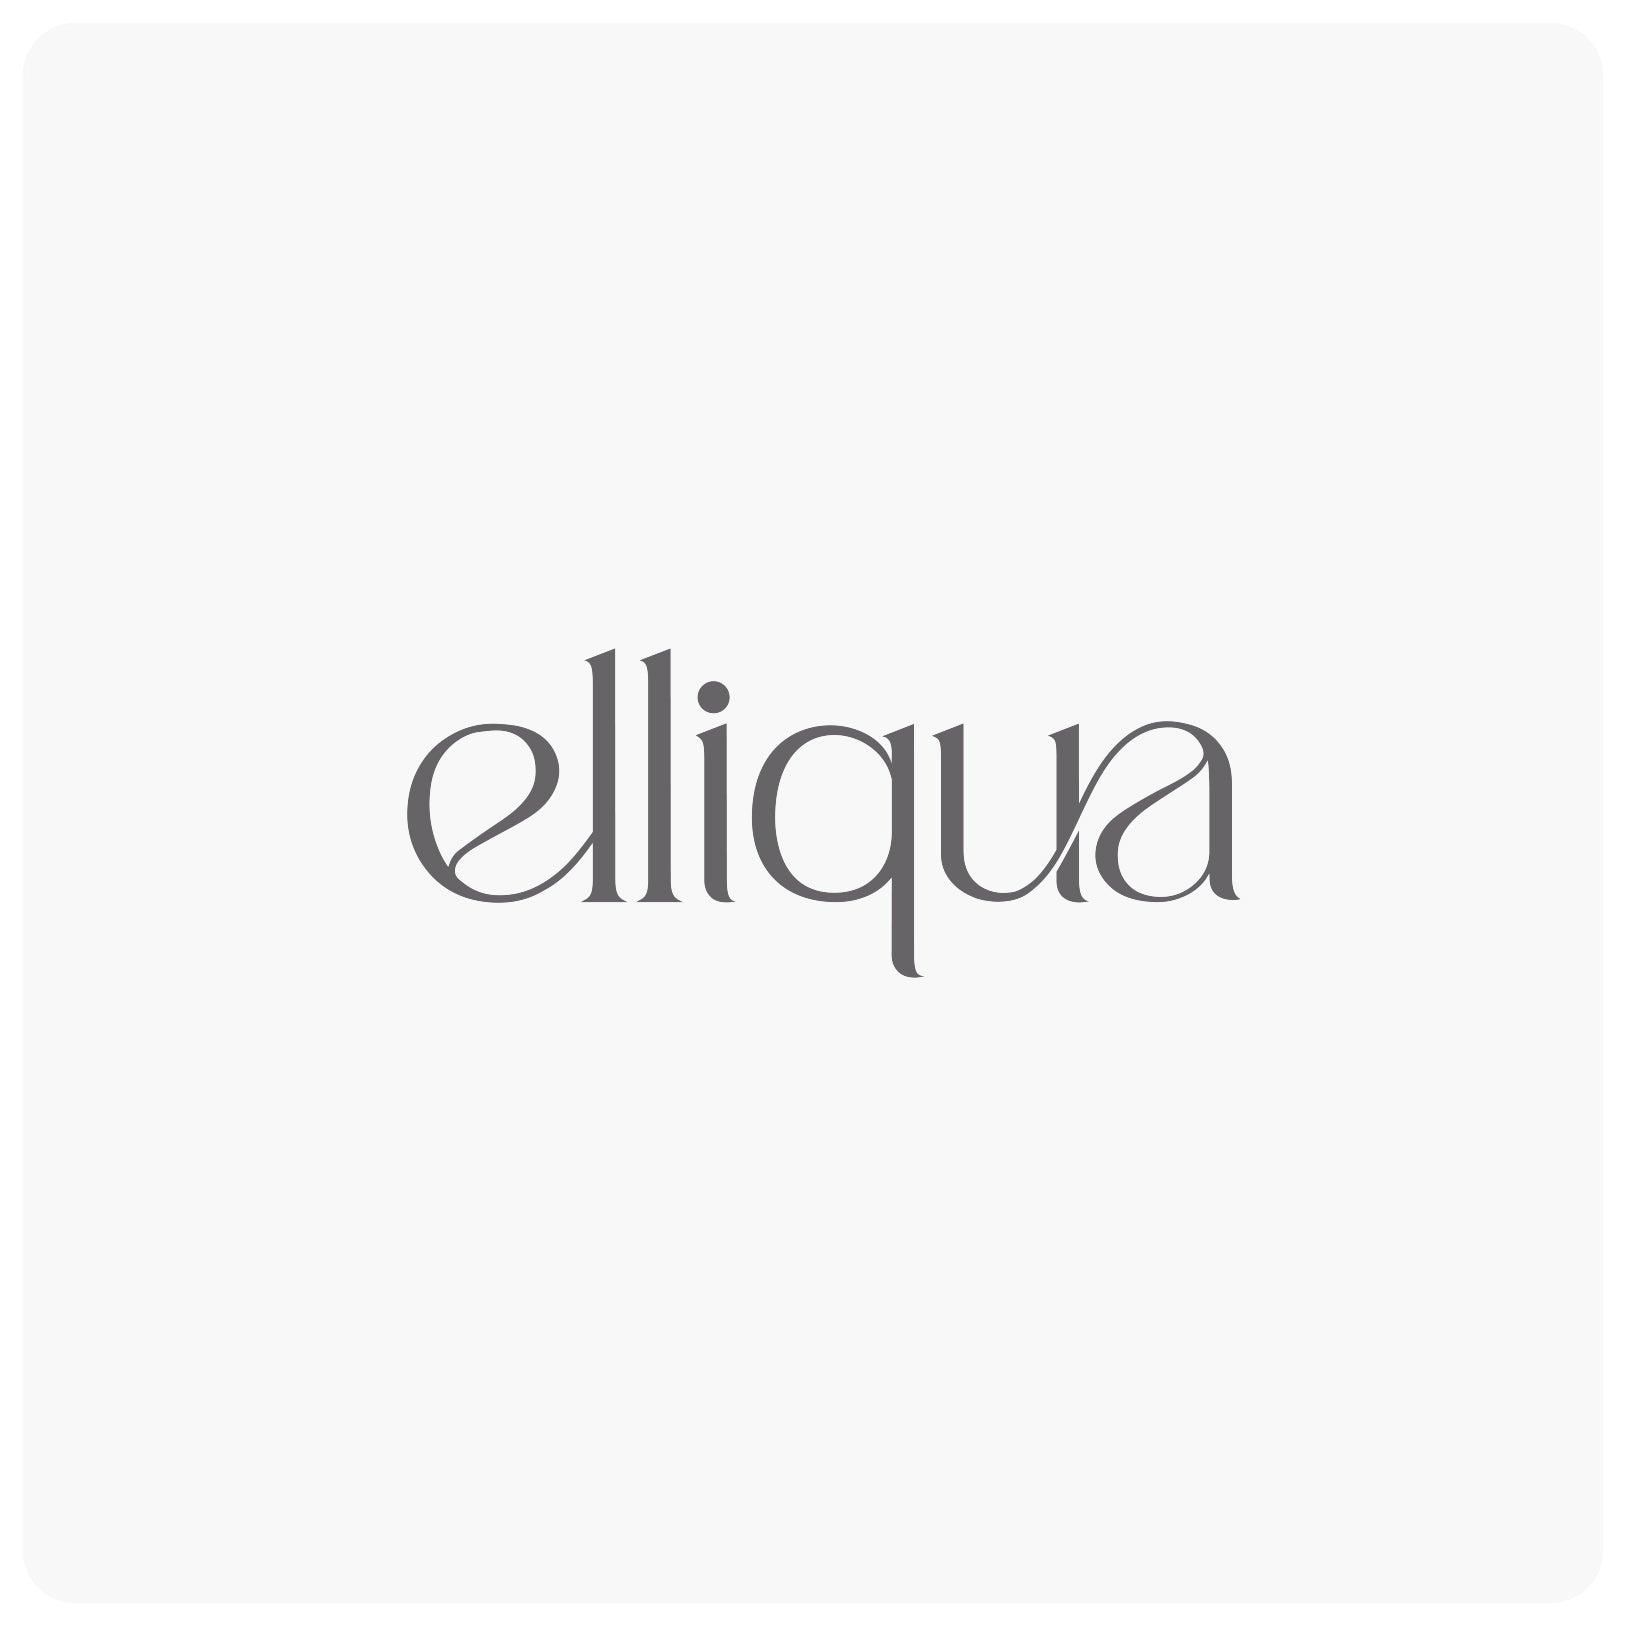 Elliqua Brand Logo